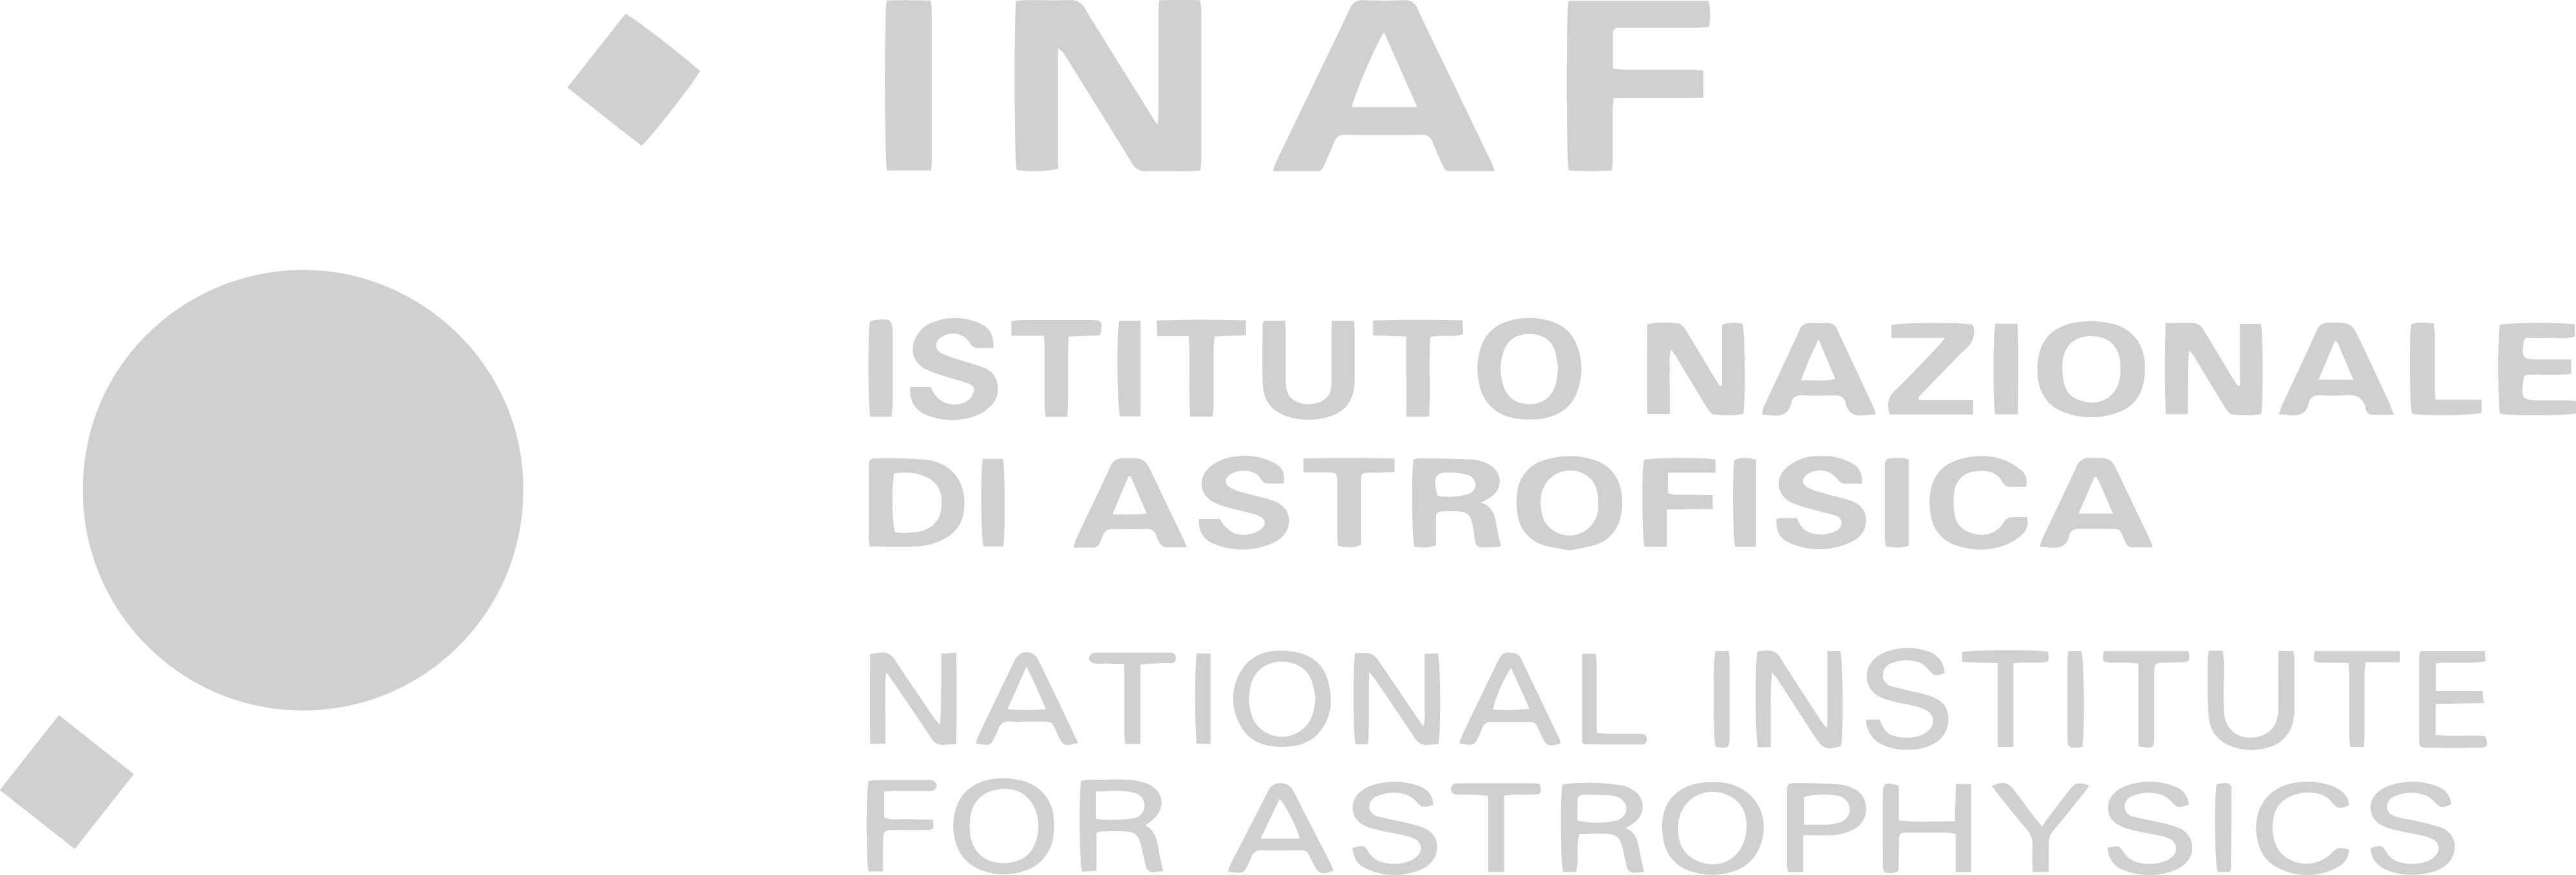 sponsor: INAF